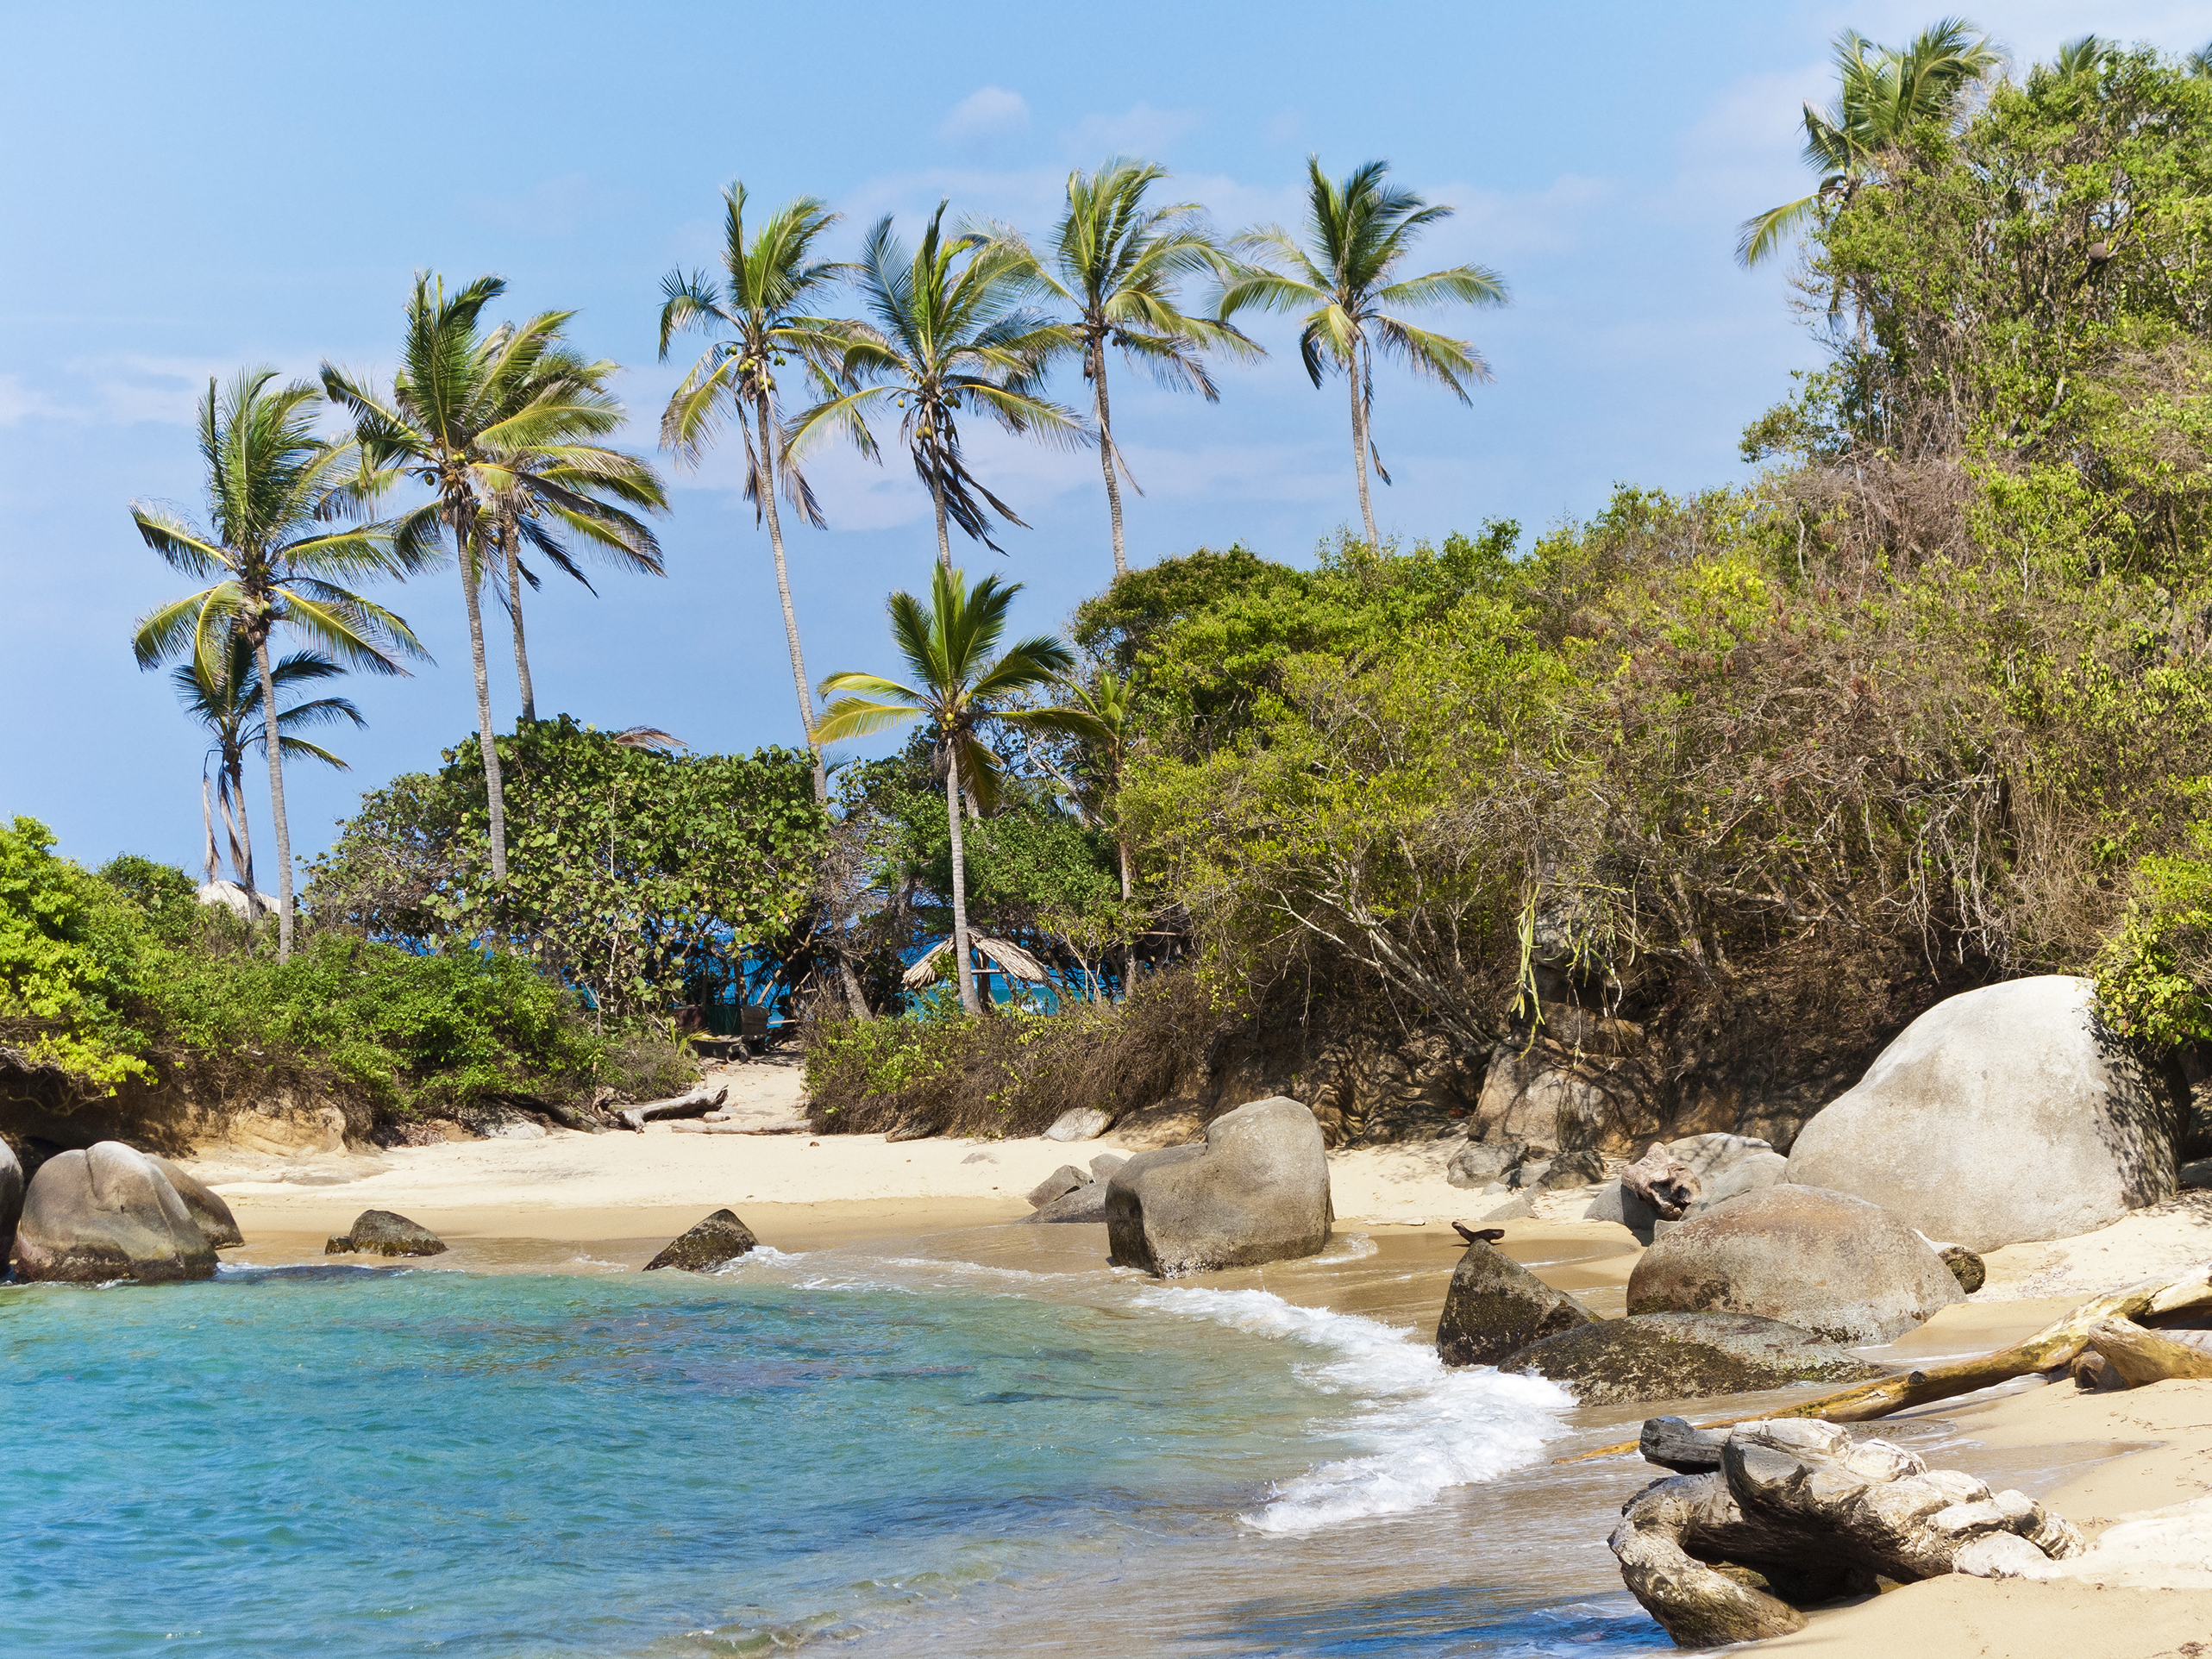 Conozca la única playa nudista que existe en Colombia